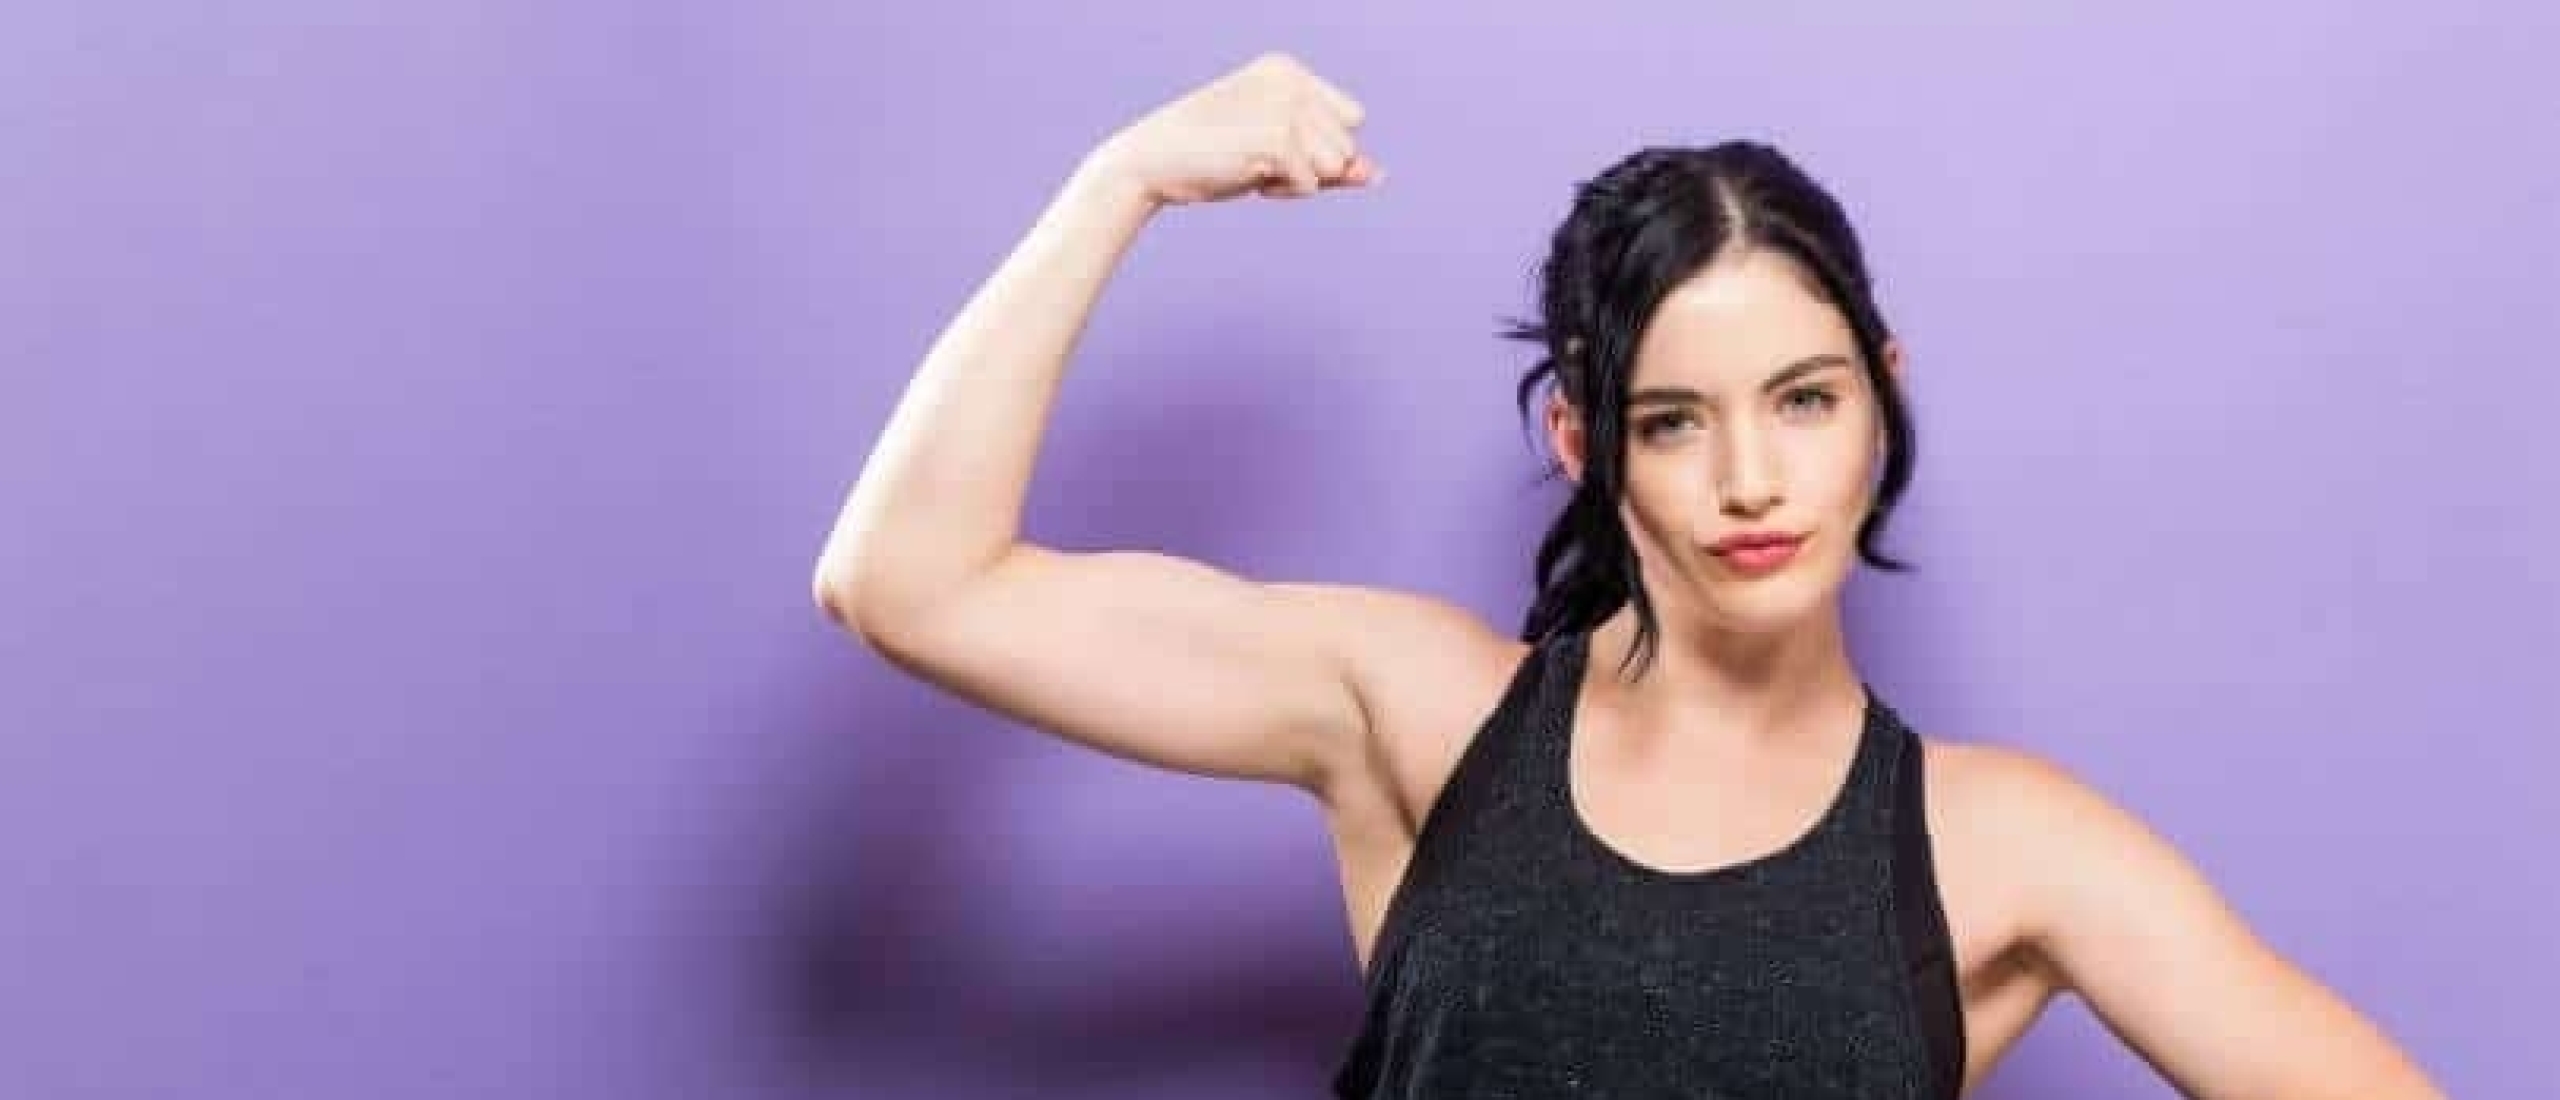 7 tips voor de krachtsportende powervrouw